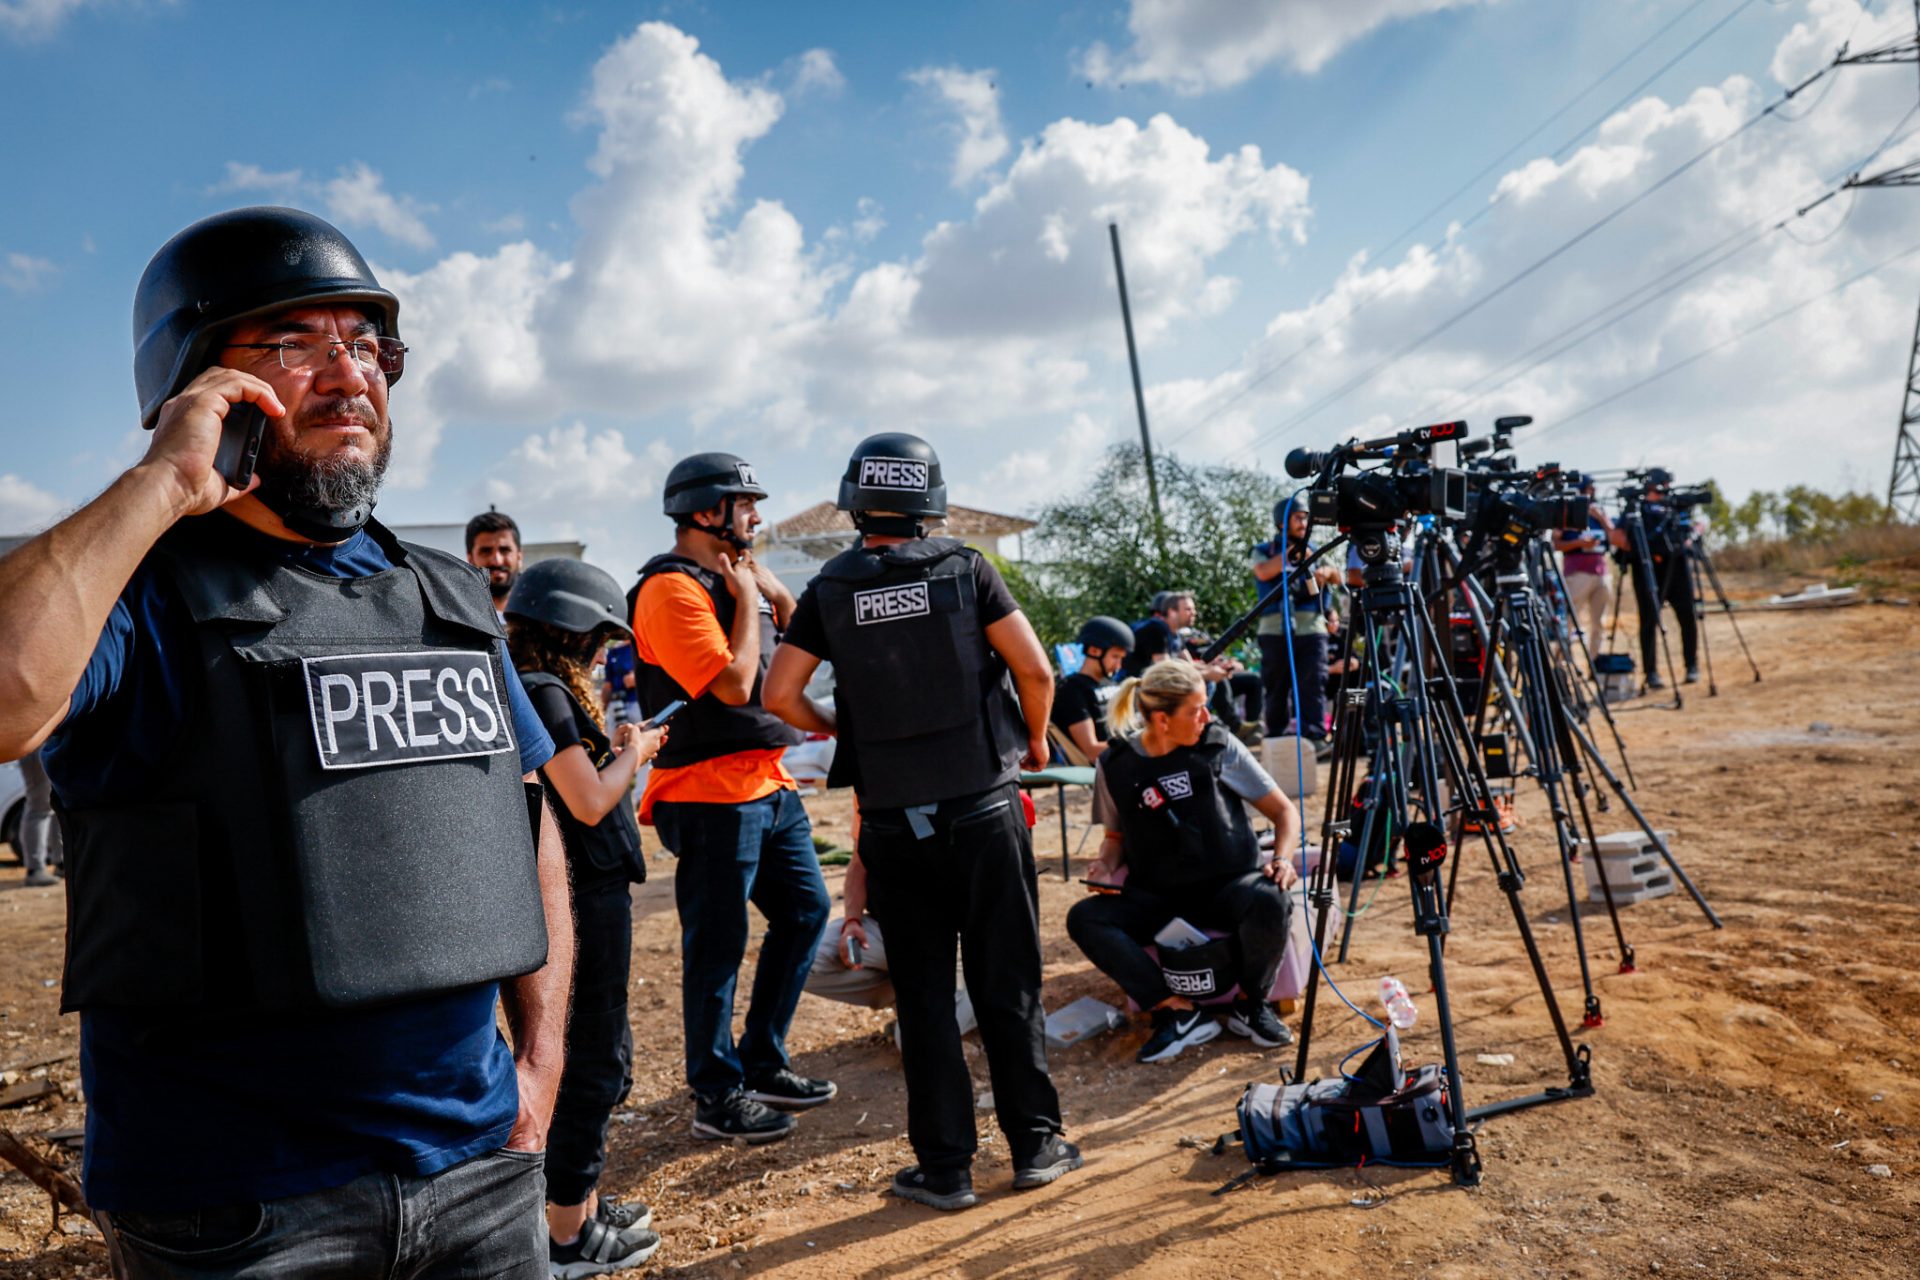 Recomandările redacției: despre viața unui jurnalist în Fâșia Gaza și cum schimbă influencerii consumul de știri